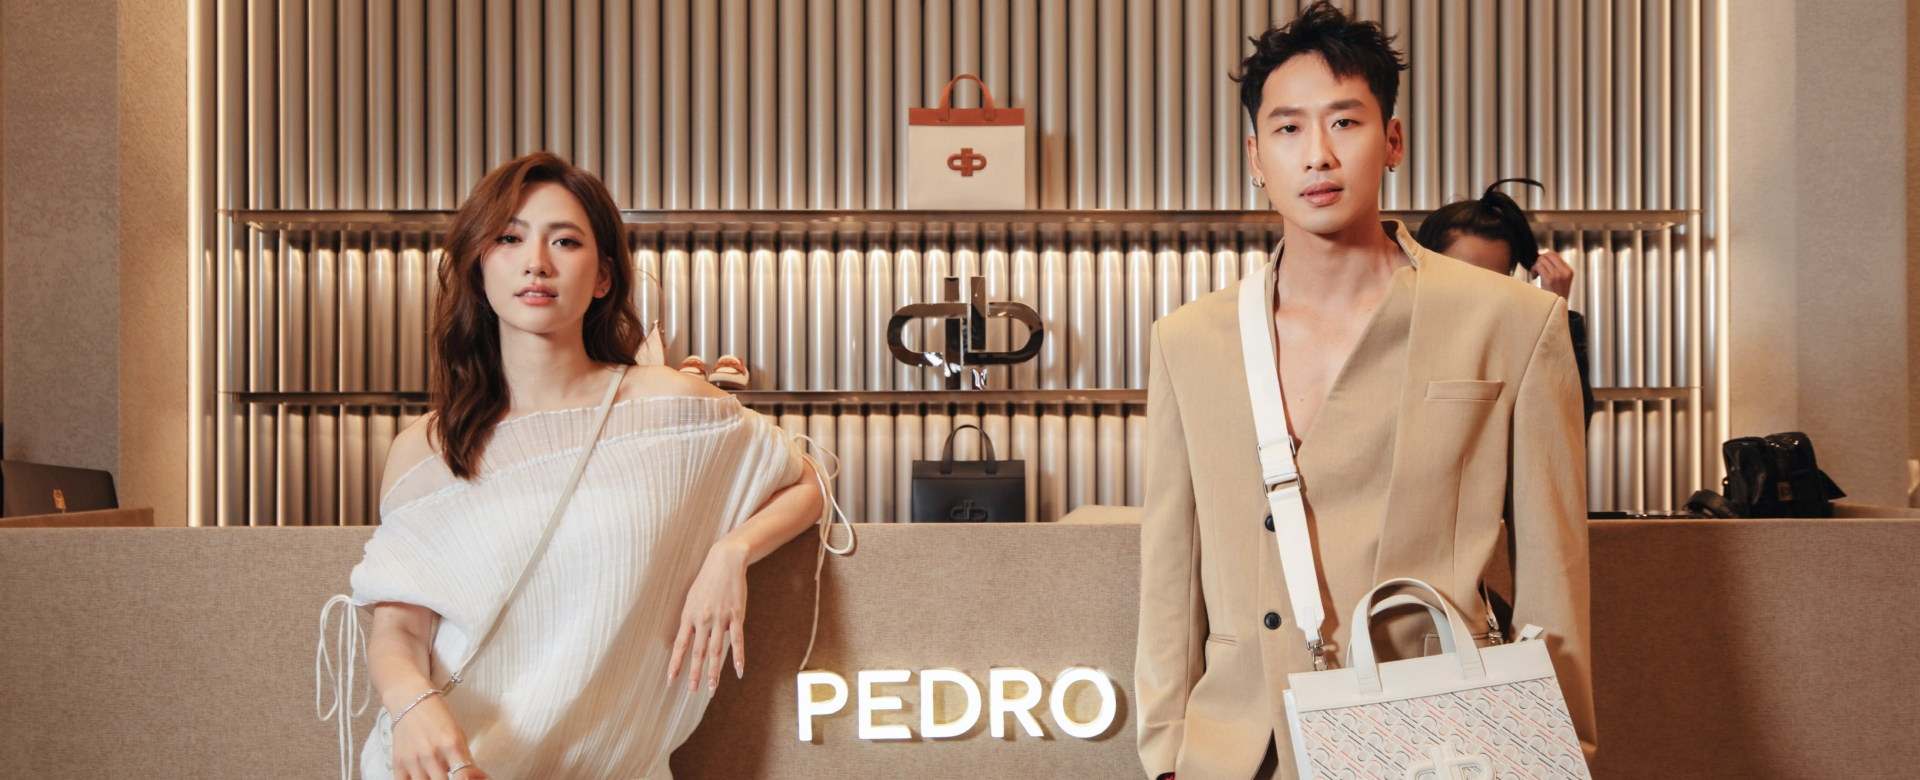 PEDRO đánh dấu cột mốc mới với sự ra mắt cửa hàng Flagship đầu tiên